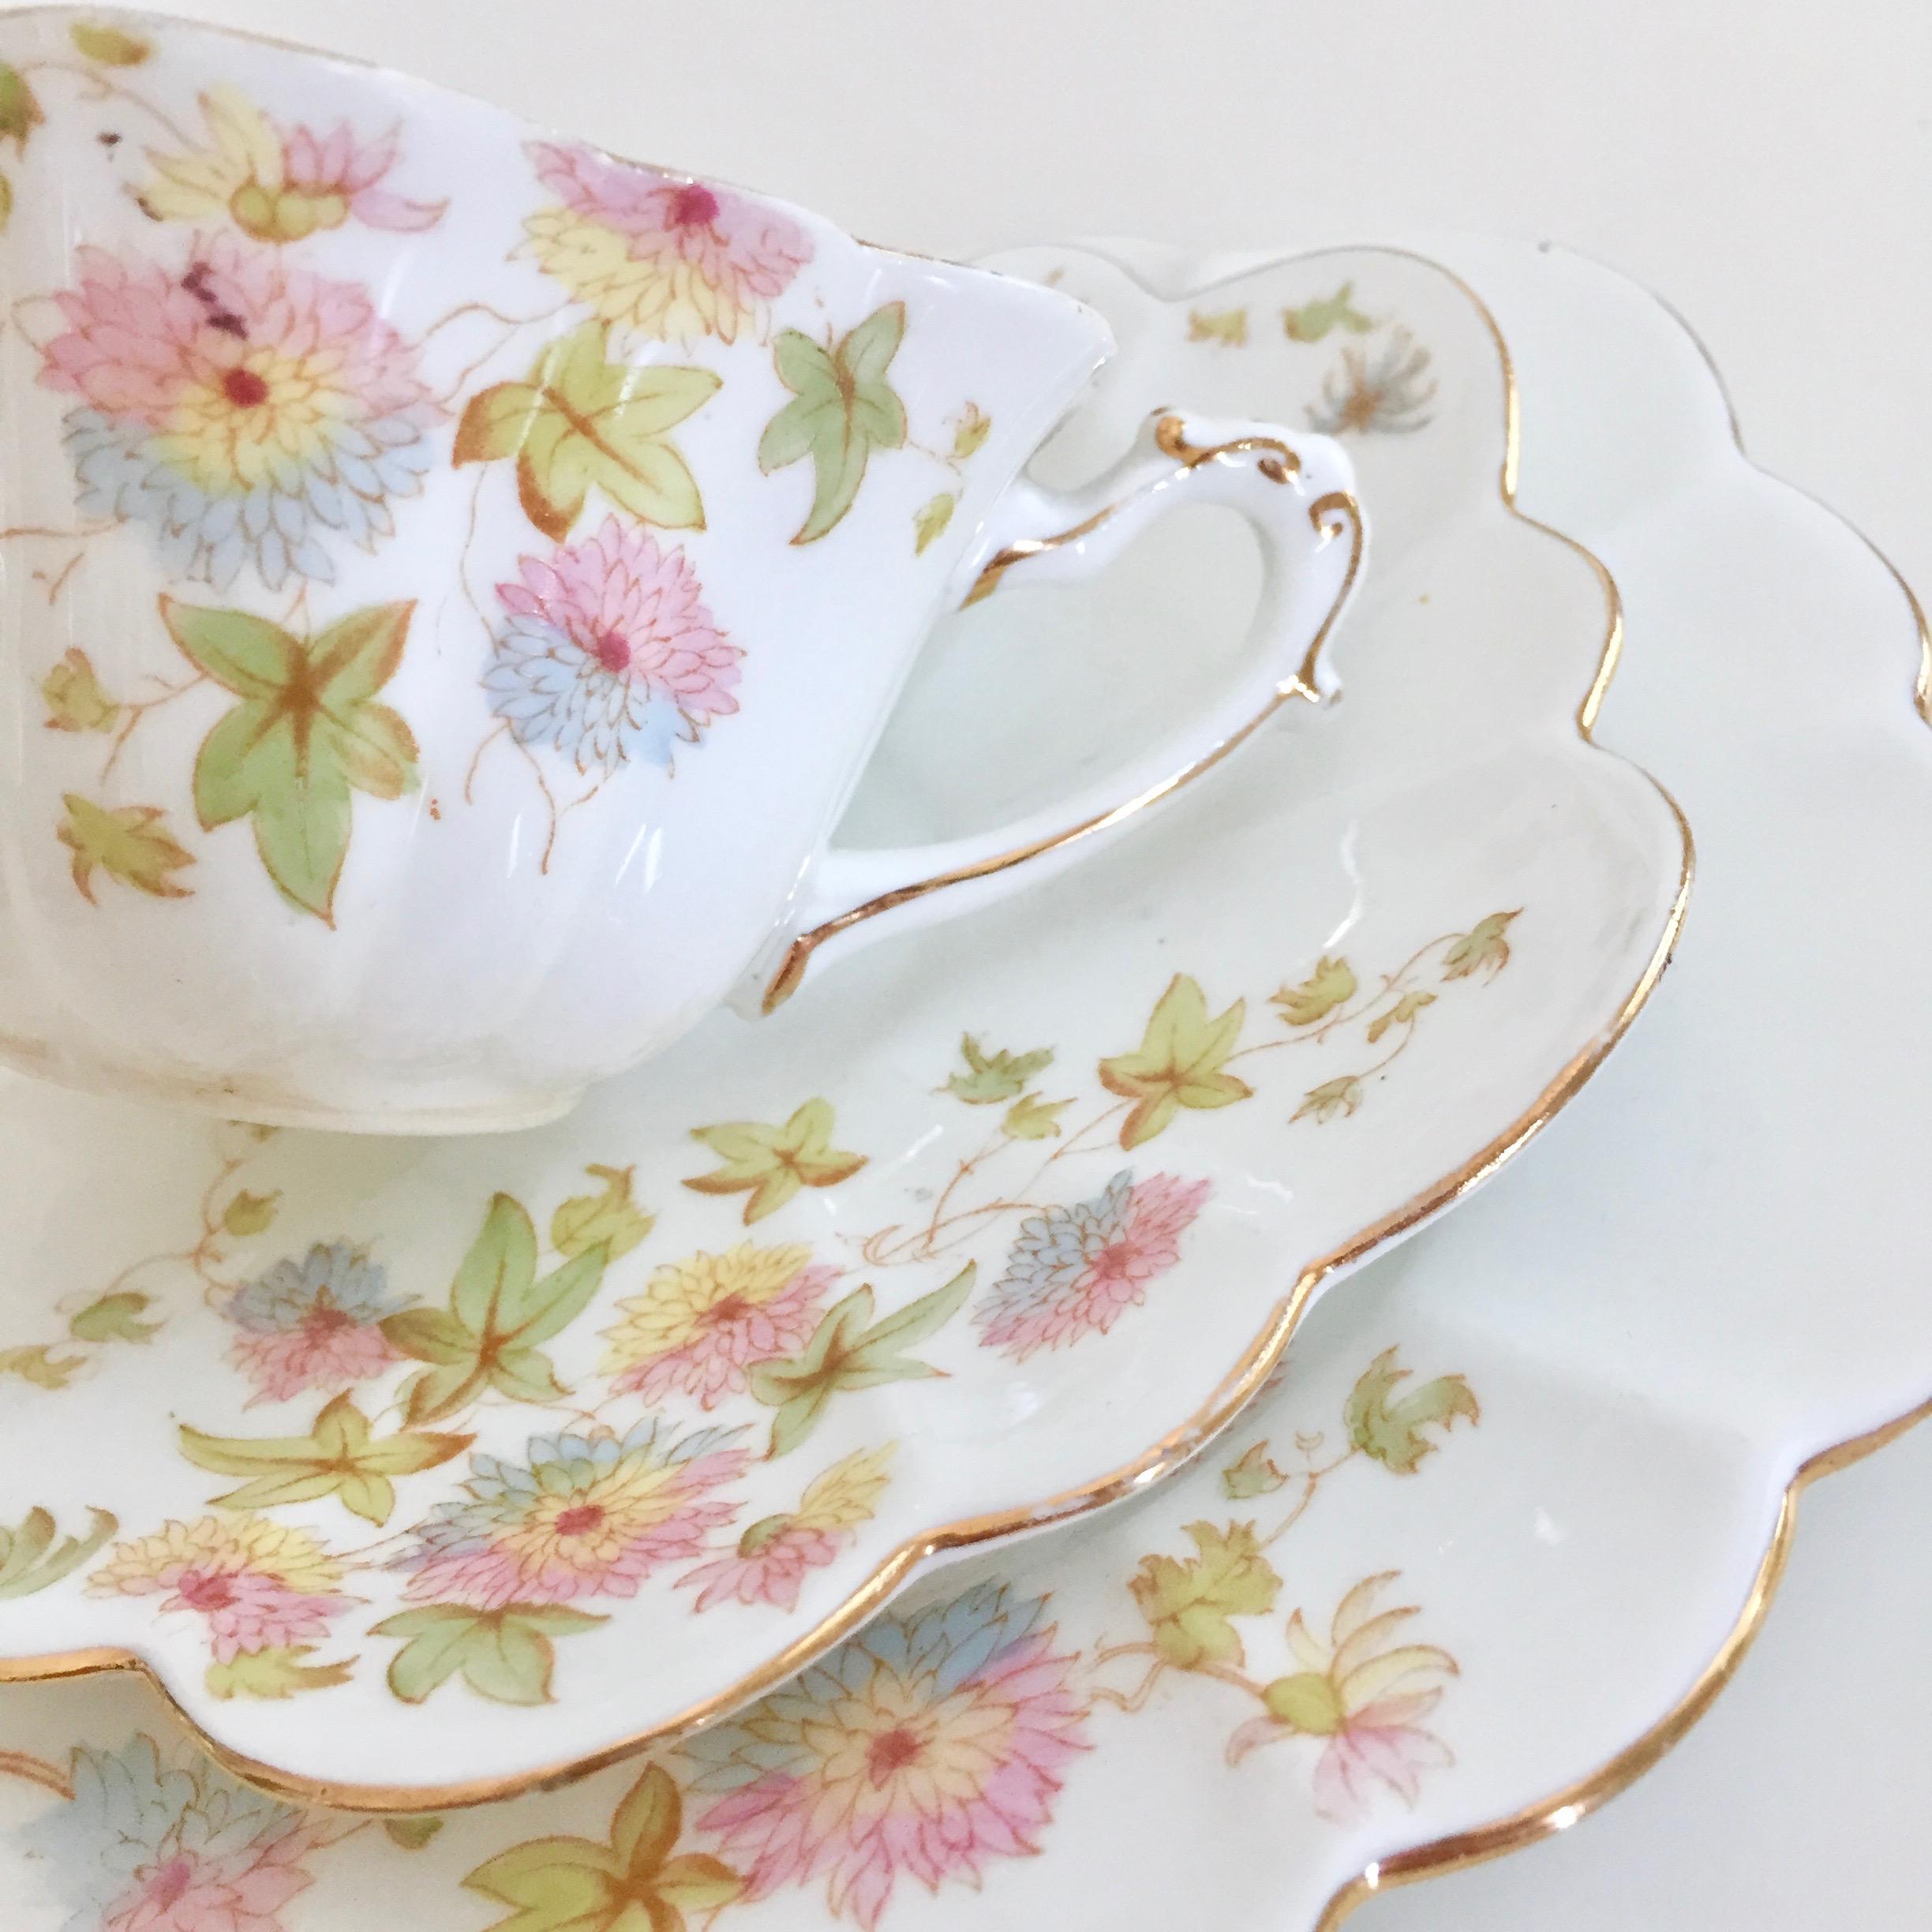 English Wileman Porcelain Tea Set, Chrysanthemum, Pastel Colors, Art Nouveau, 1896